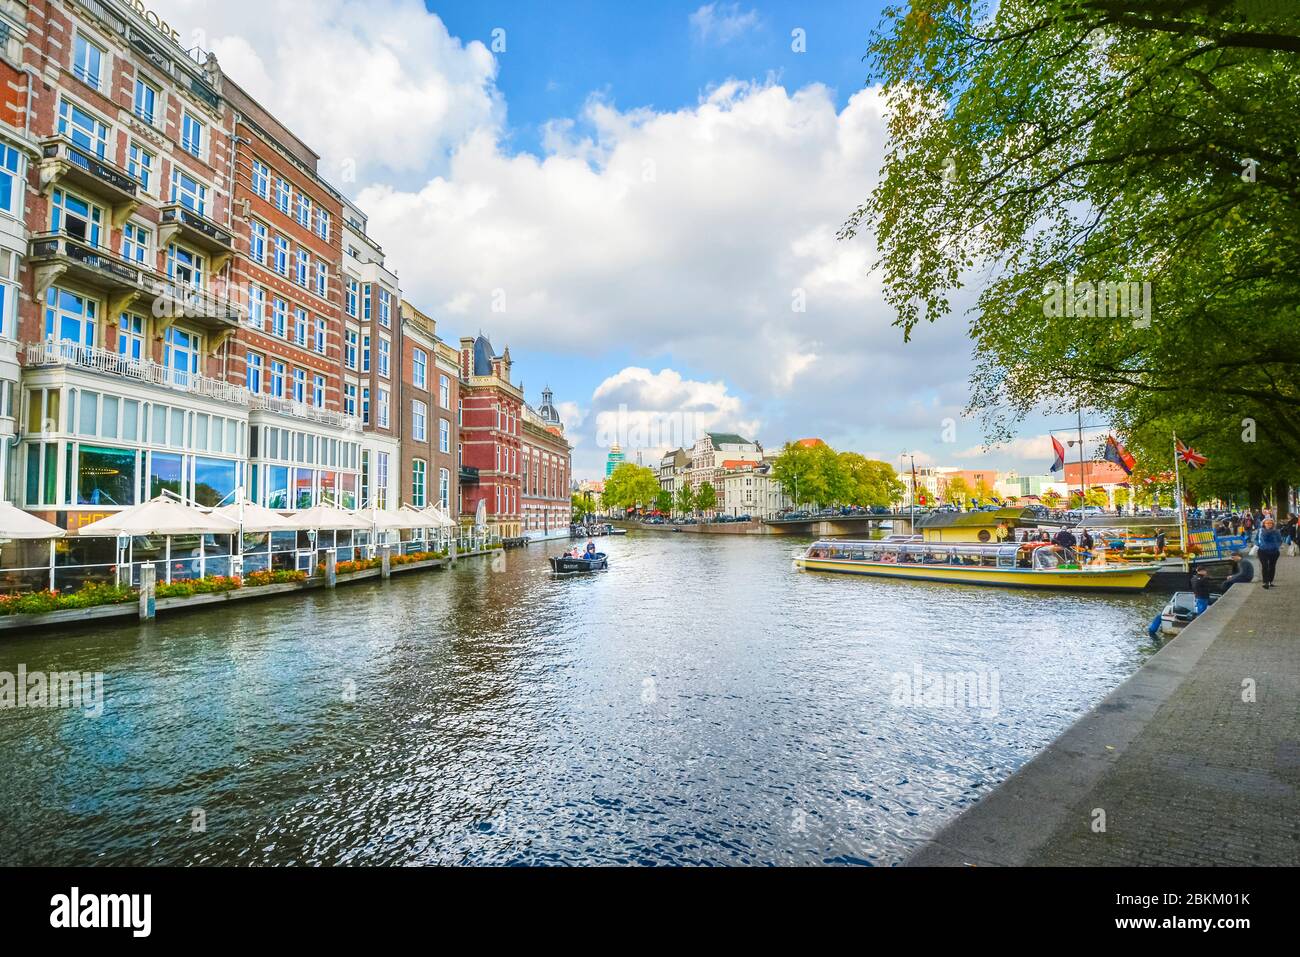 Una piccola barca scivola passato imbarcazioni turistiche sul canal grande vicino al quartiere dei musei di Amsterdam all'inizio dell'autunno. Foto Stock